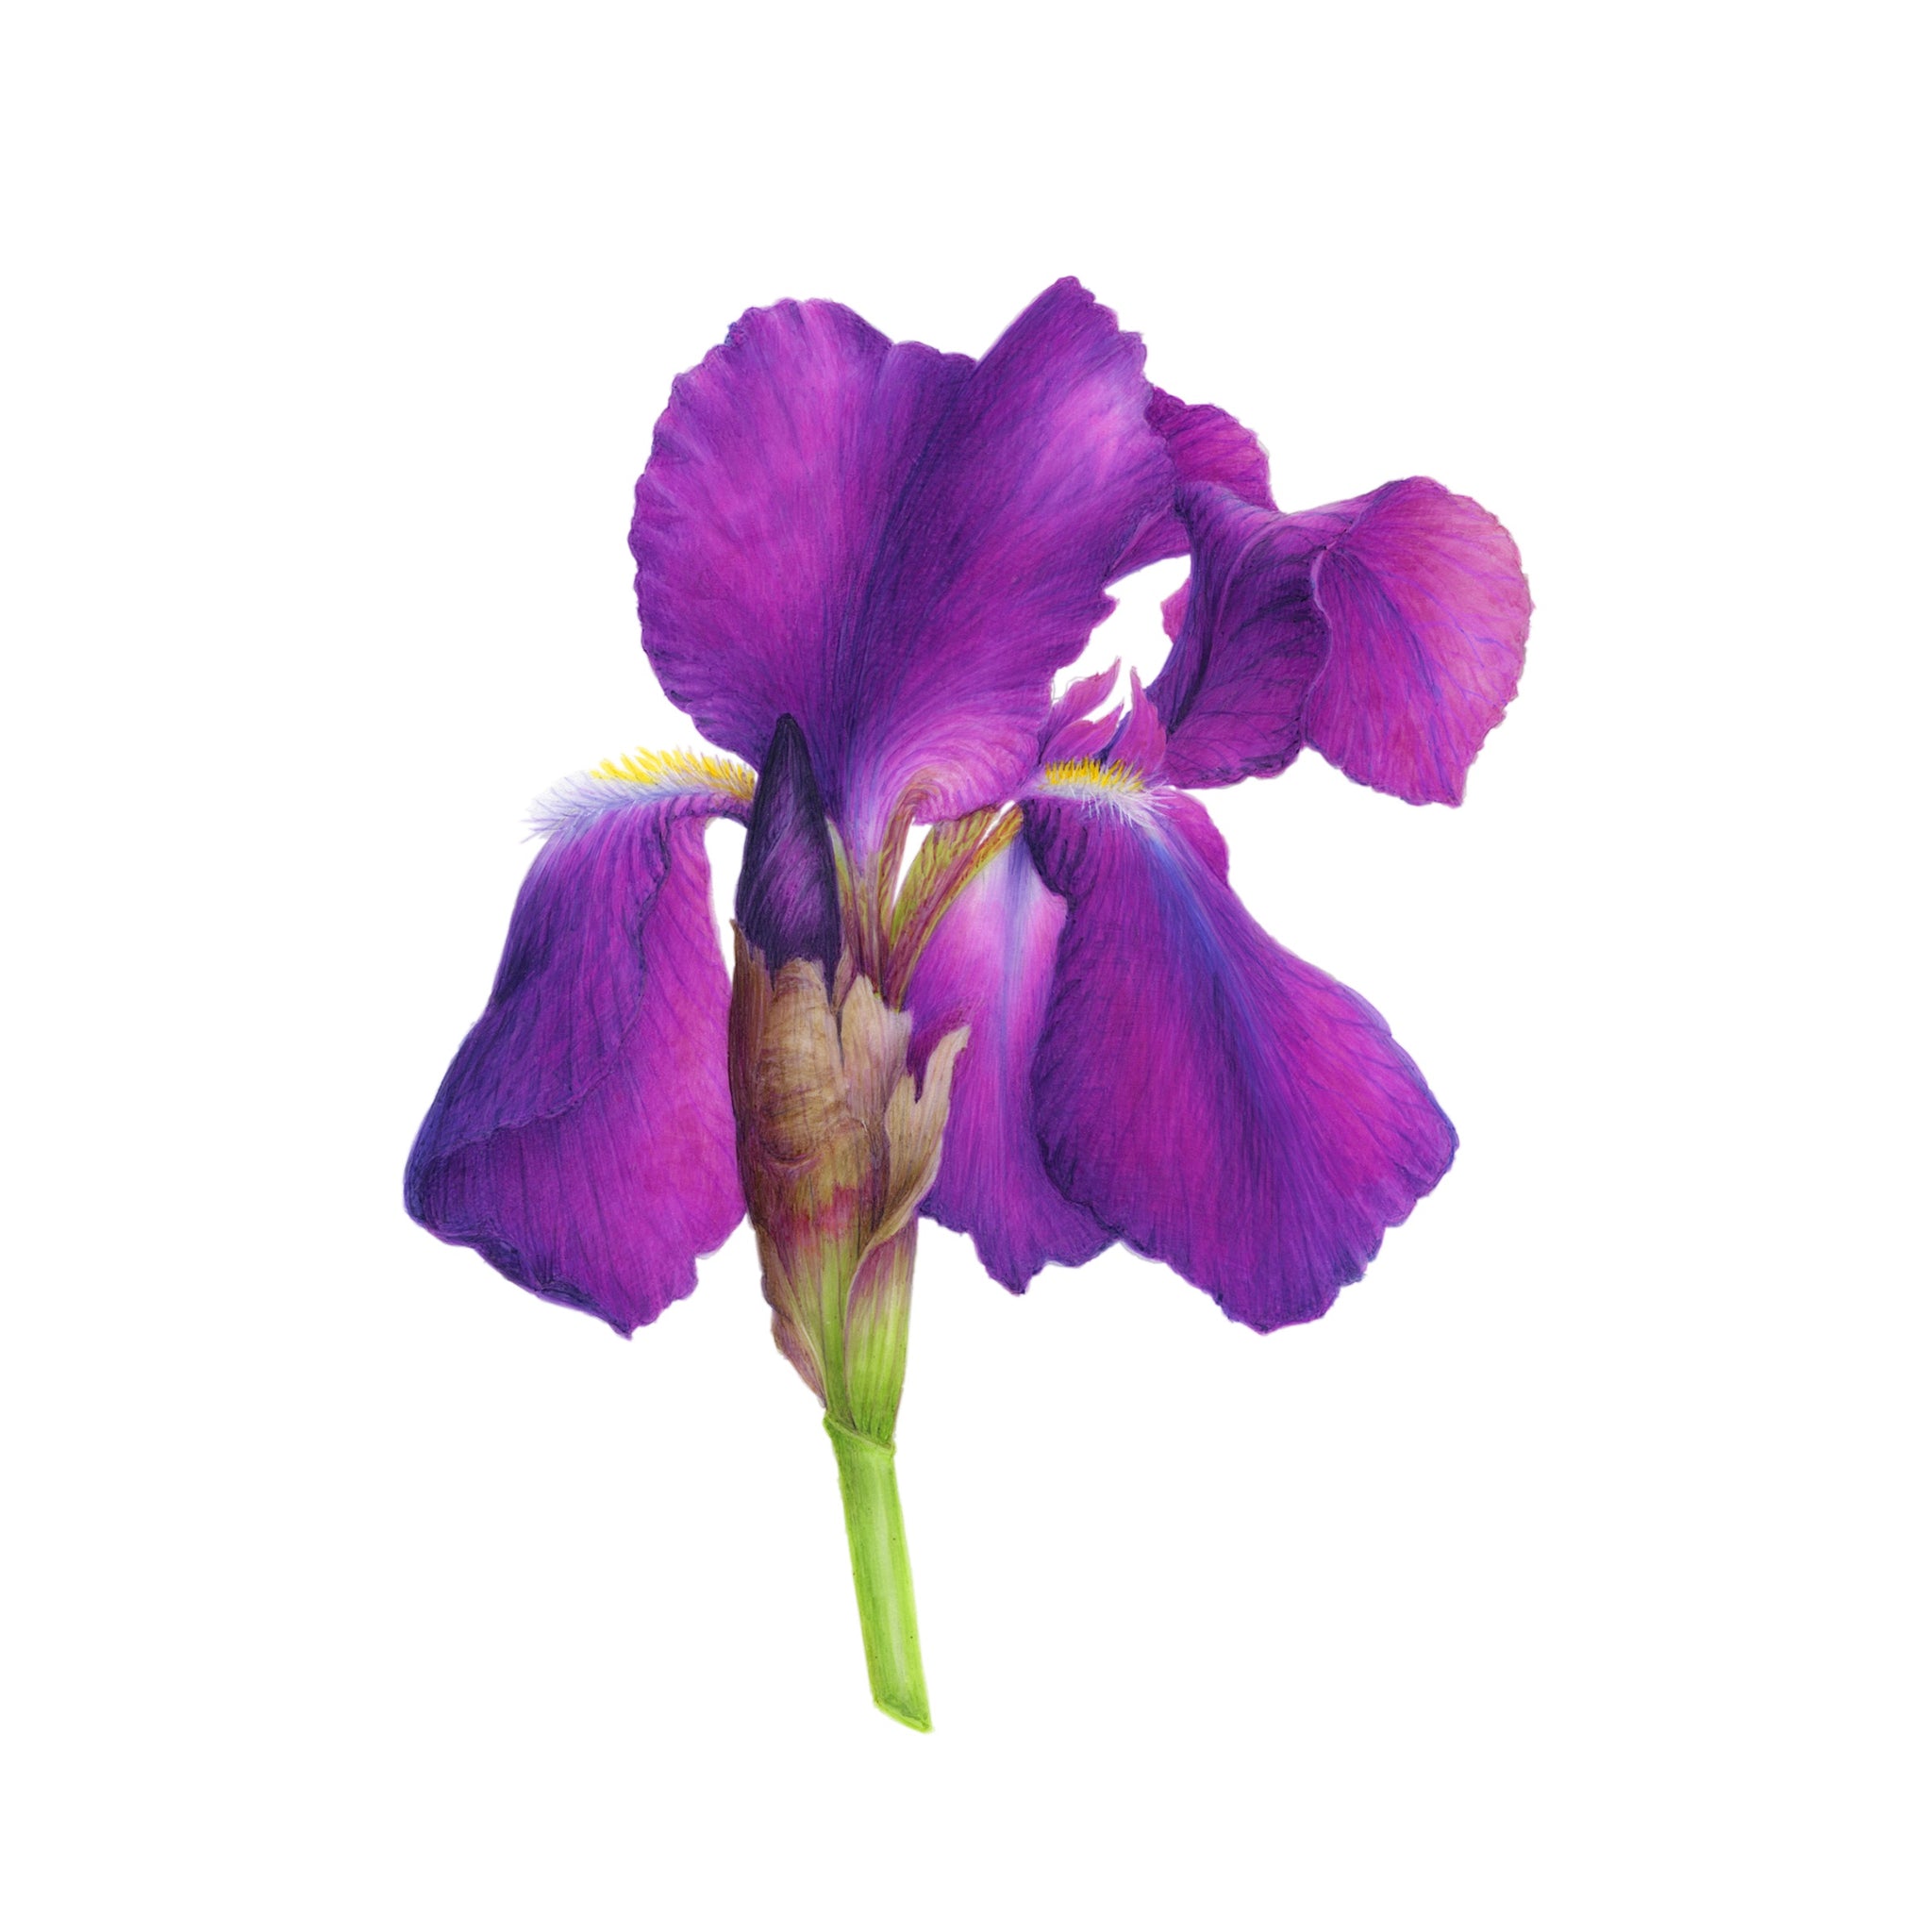 Iris violet - VINCENT JEANNEROT. Aquarelles botaniques